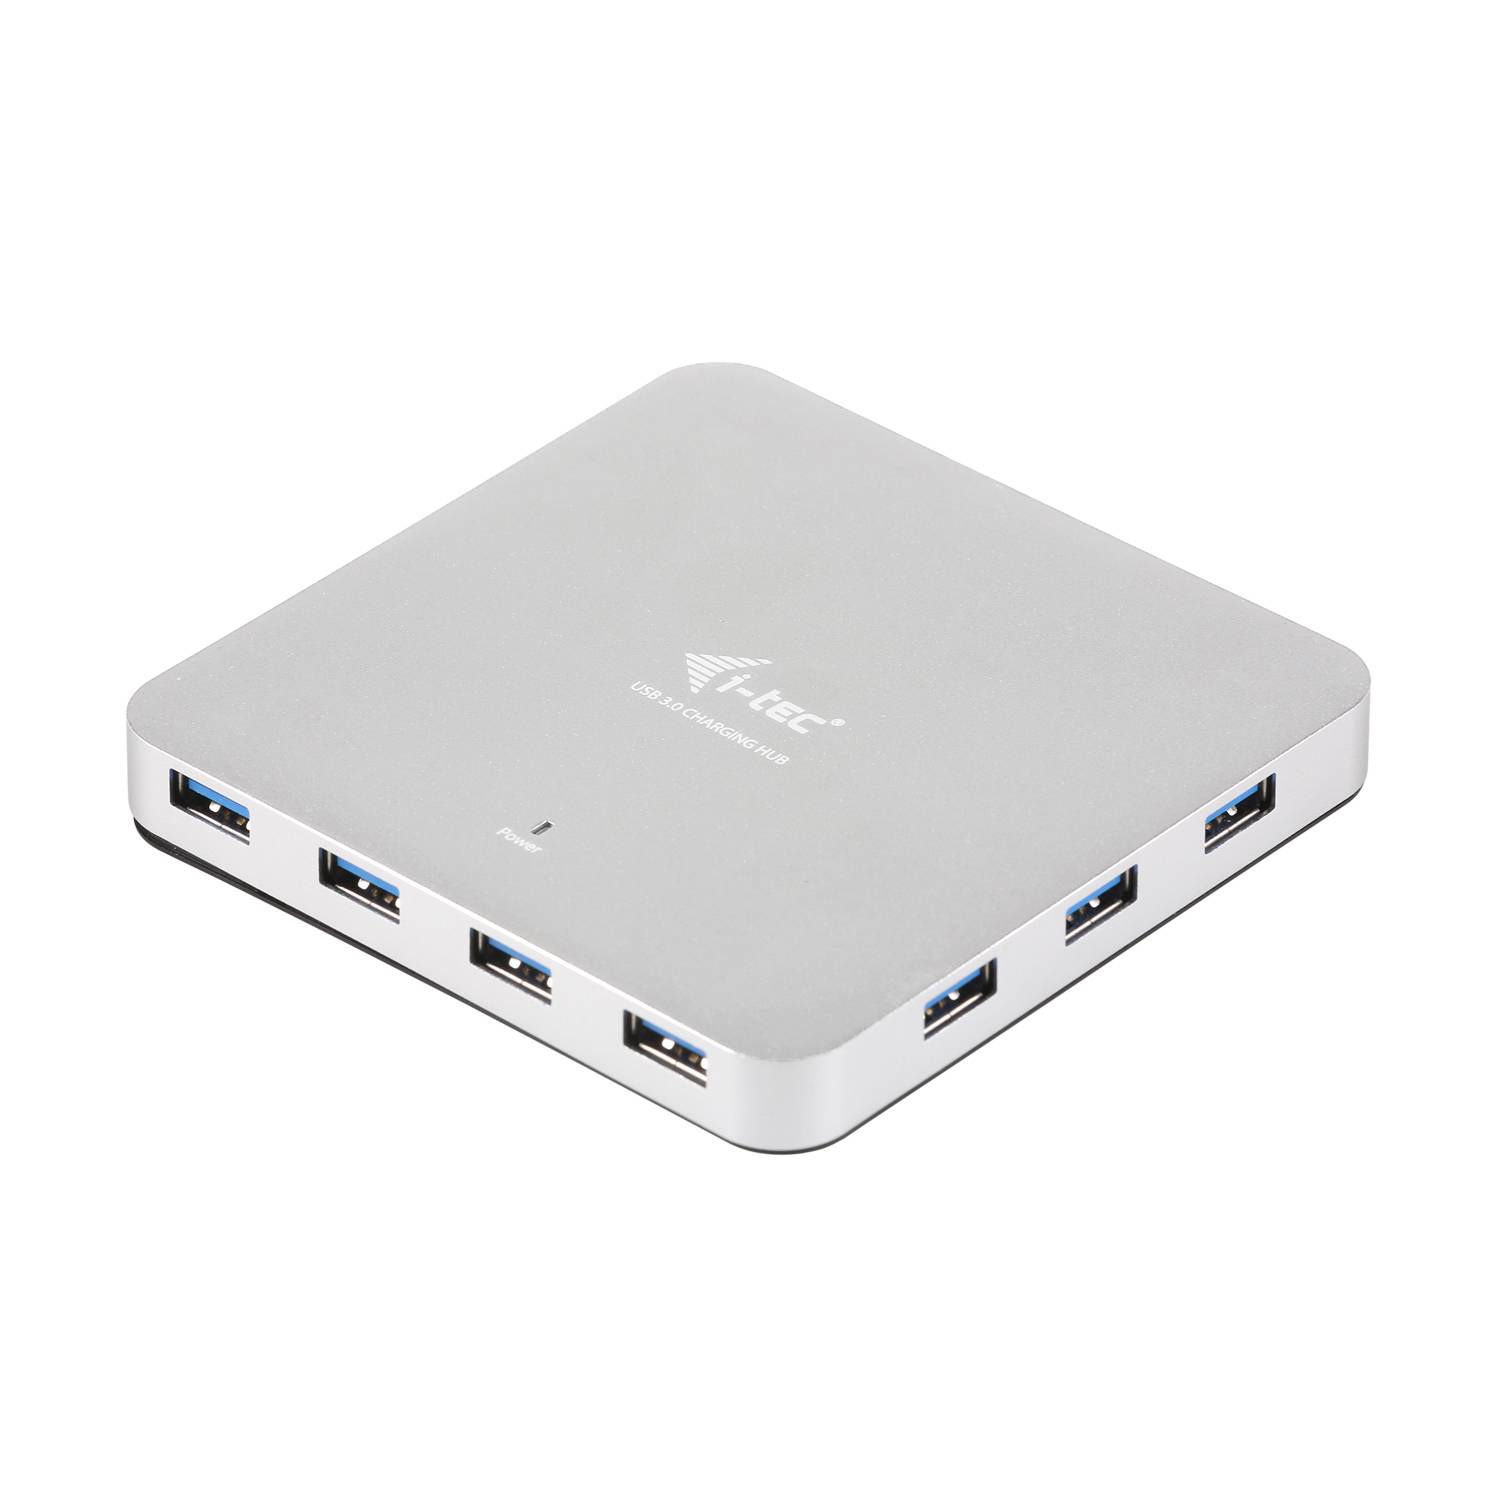 Rca Informatique - Image du produit : I-TEC METAL ACTIVE HUB 10 PORT USB 3.0 WITH PS WIN MAC OS